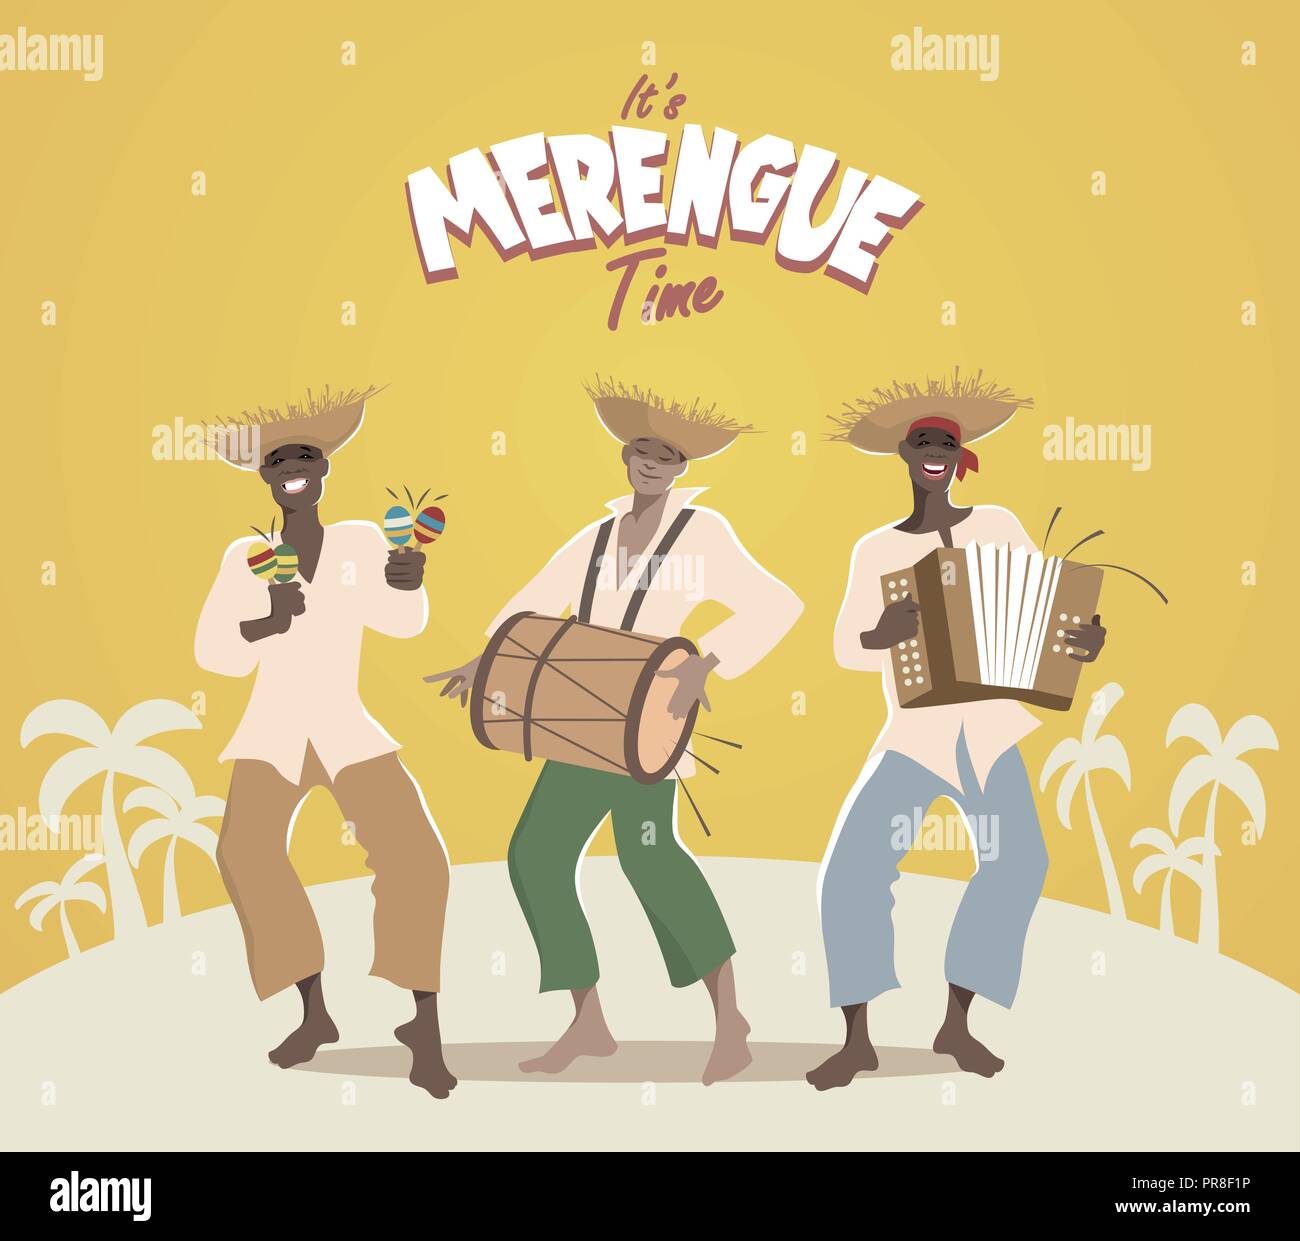 Tres músicos latinos tocando música latina: merengue, salsa, bachata... Ilustración del Vector